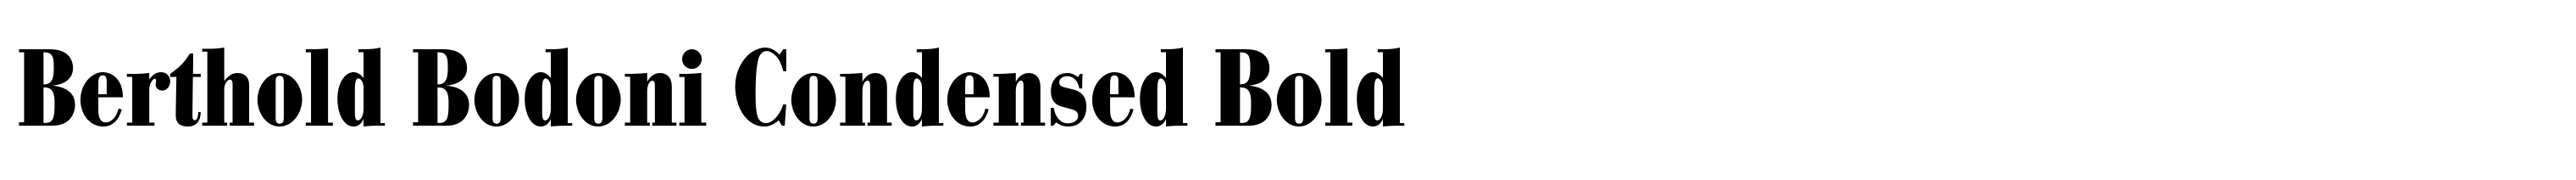 Berthold Bodoni Condensed Bold